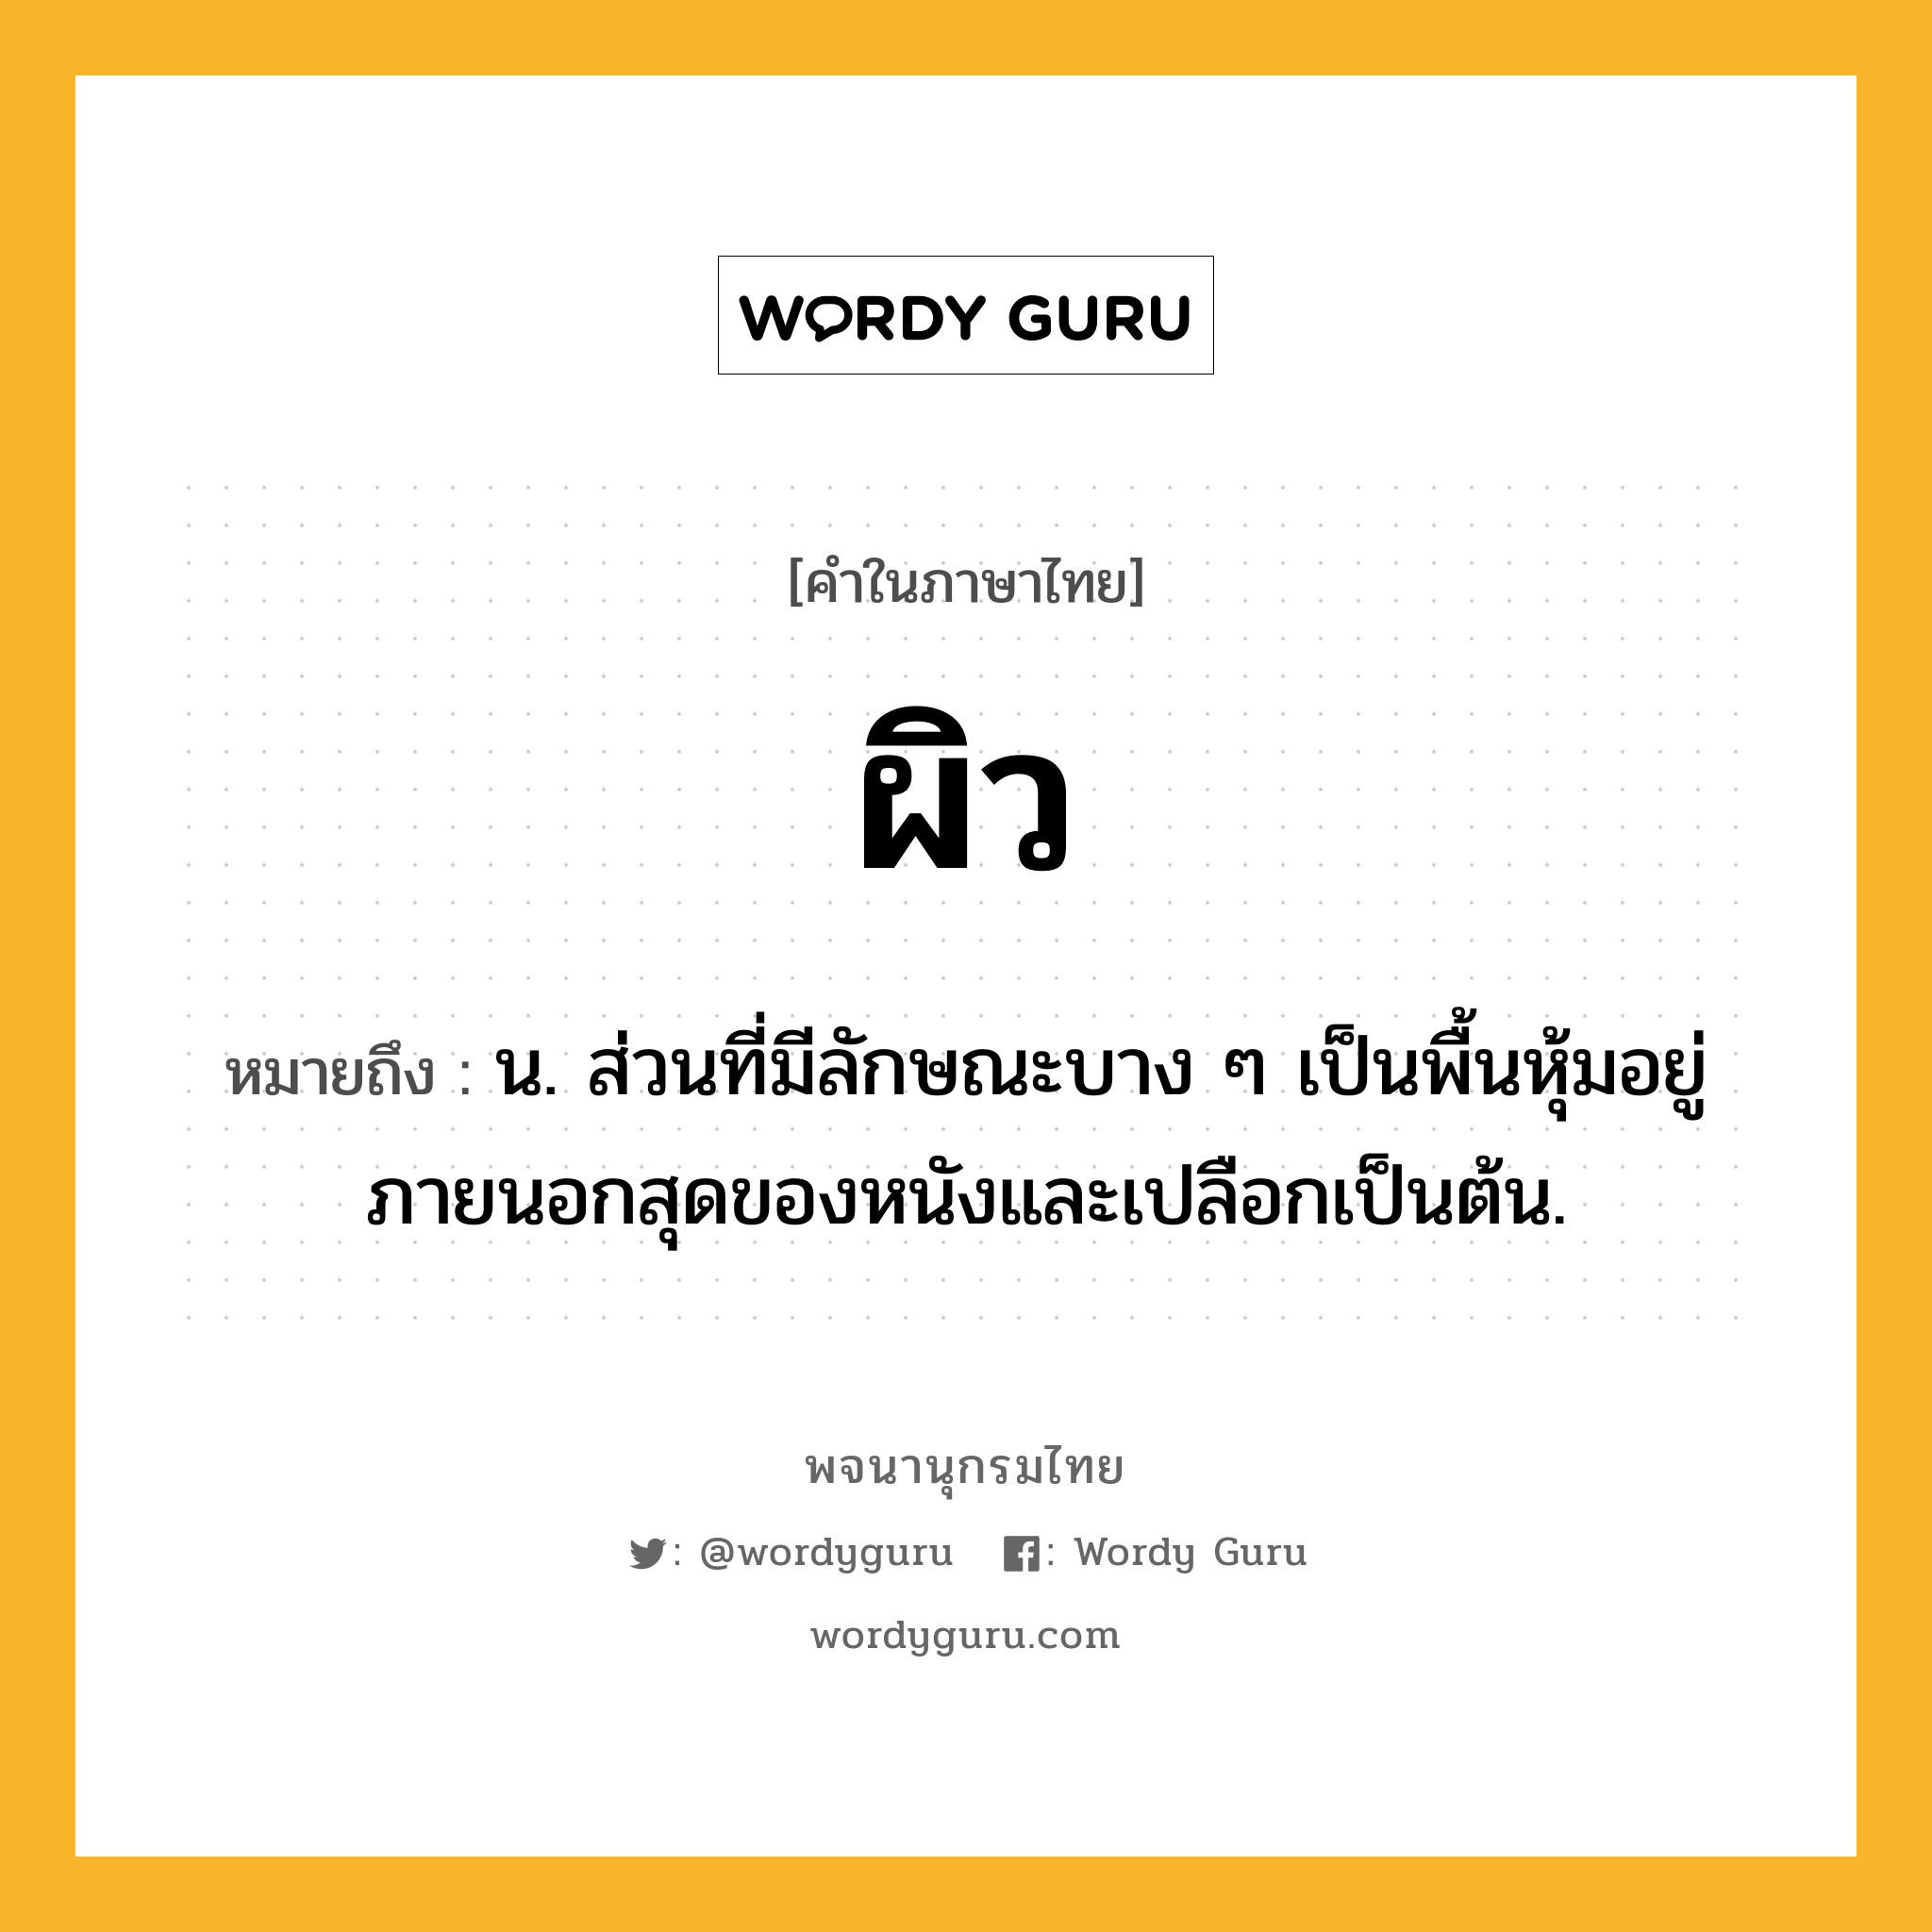 ผิว ความหมาย หมายถึงอะไร?, คำในภาษาไทย ผิว หมายถึง น. ส่วนที่มีลักษณะบาง ๆ เป็นพื้นหุ้มอยู่ภายนอกสุดของหนังและเปลือกเป็นต้น.